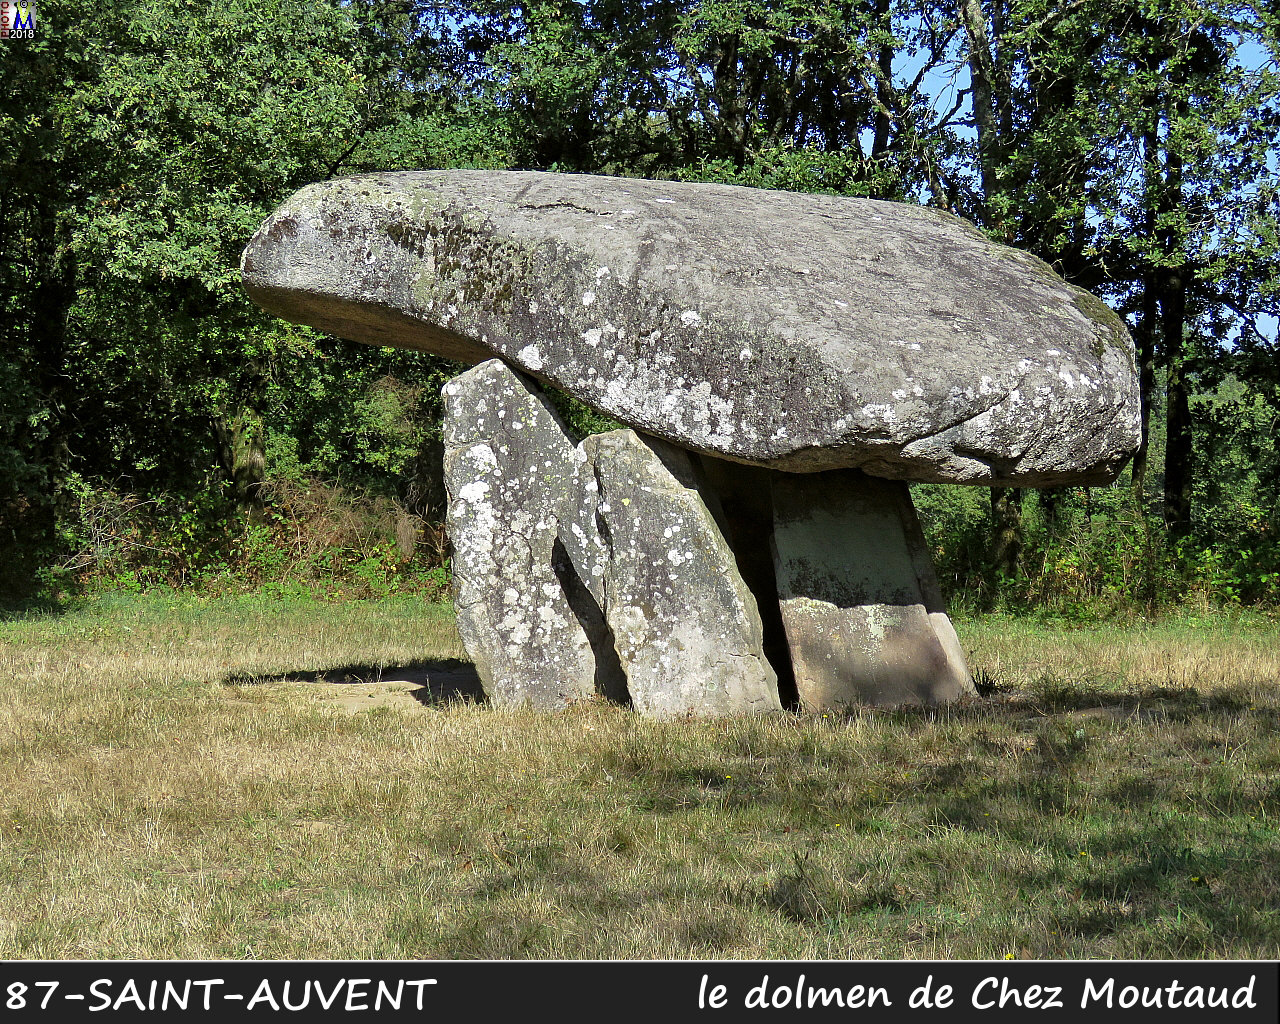 87St-AUVENT_dolmen_1000.jpg